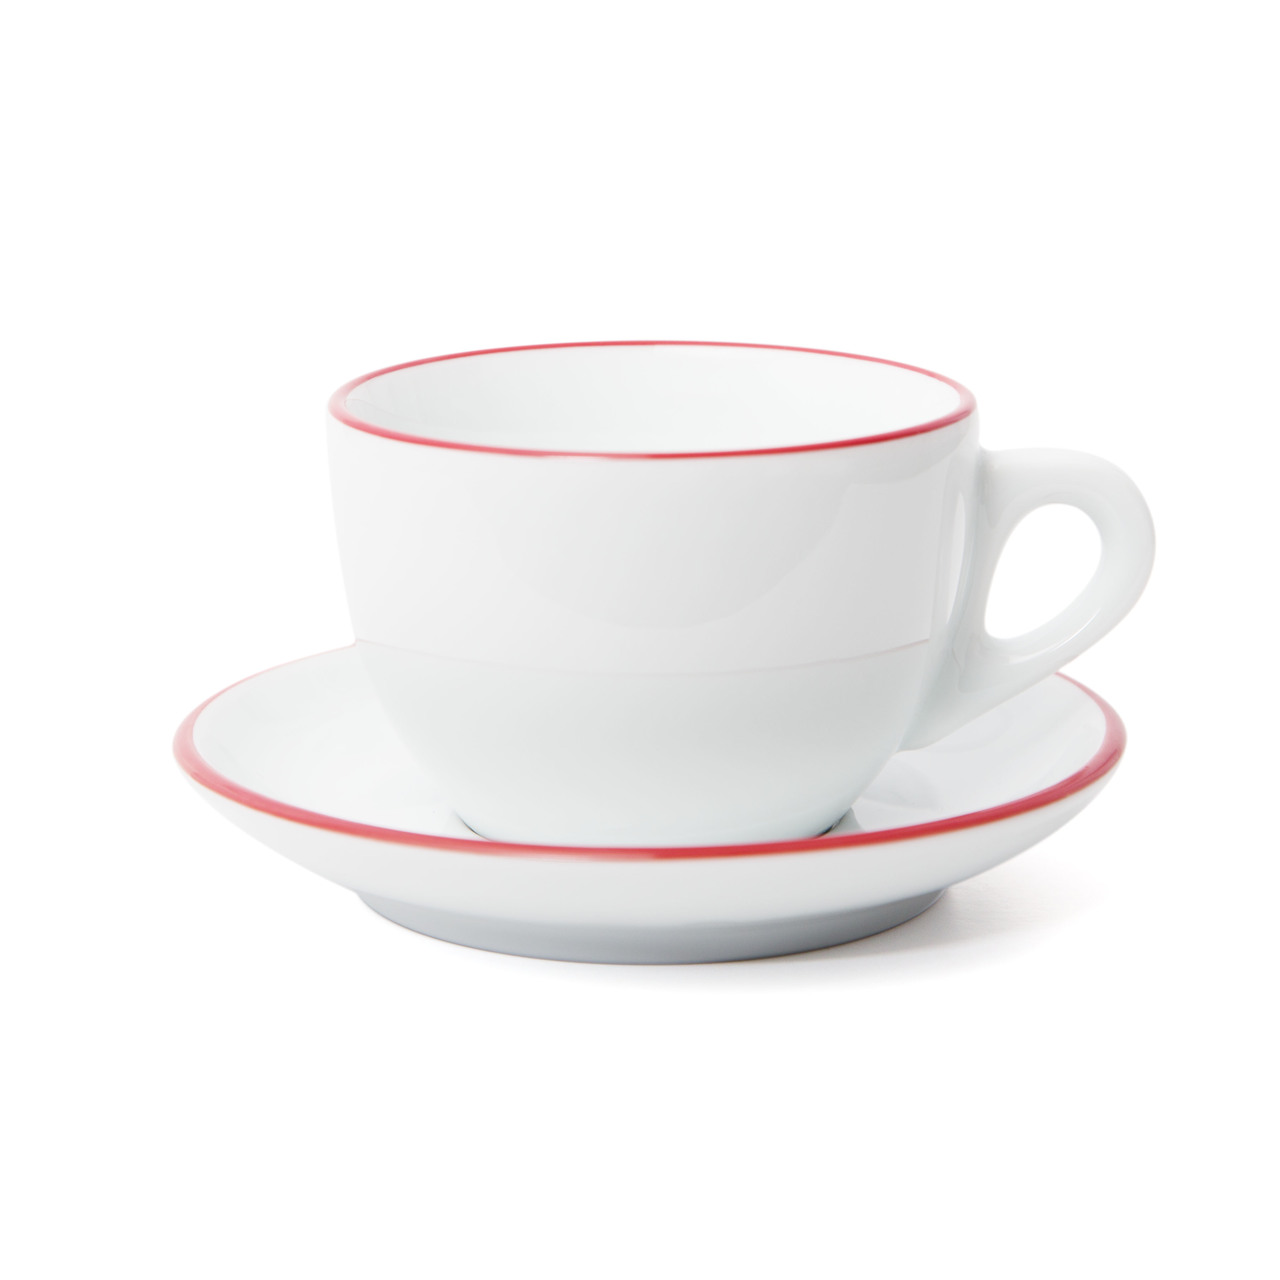 "VERONA" RED RIM Cappuccino Cups L 260ml